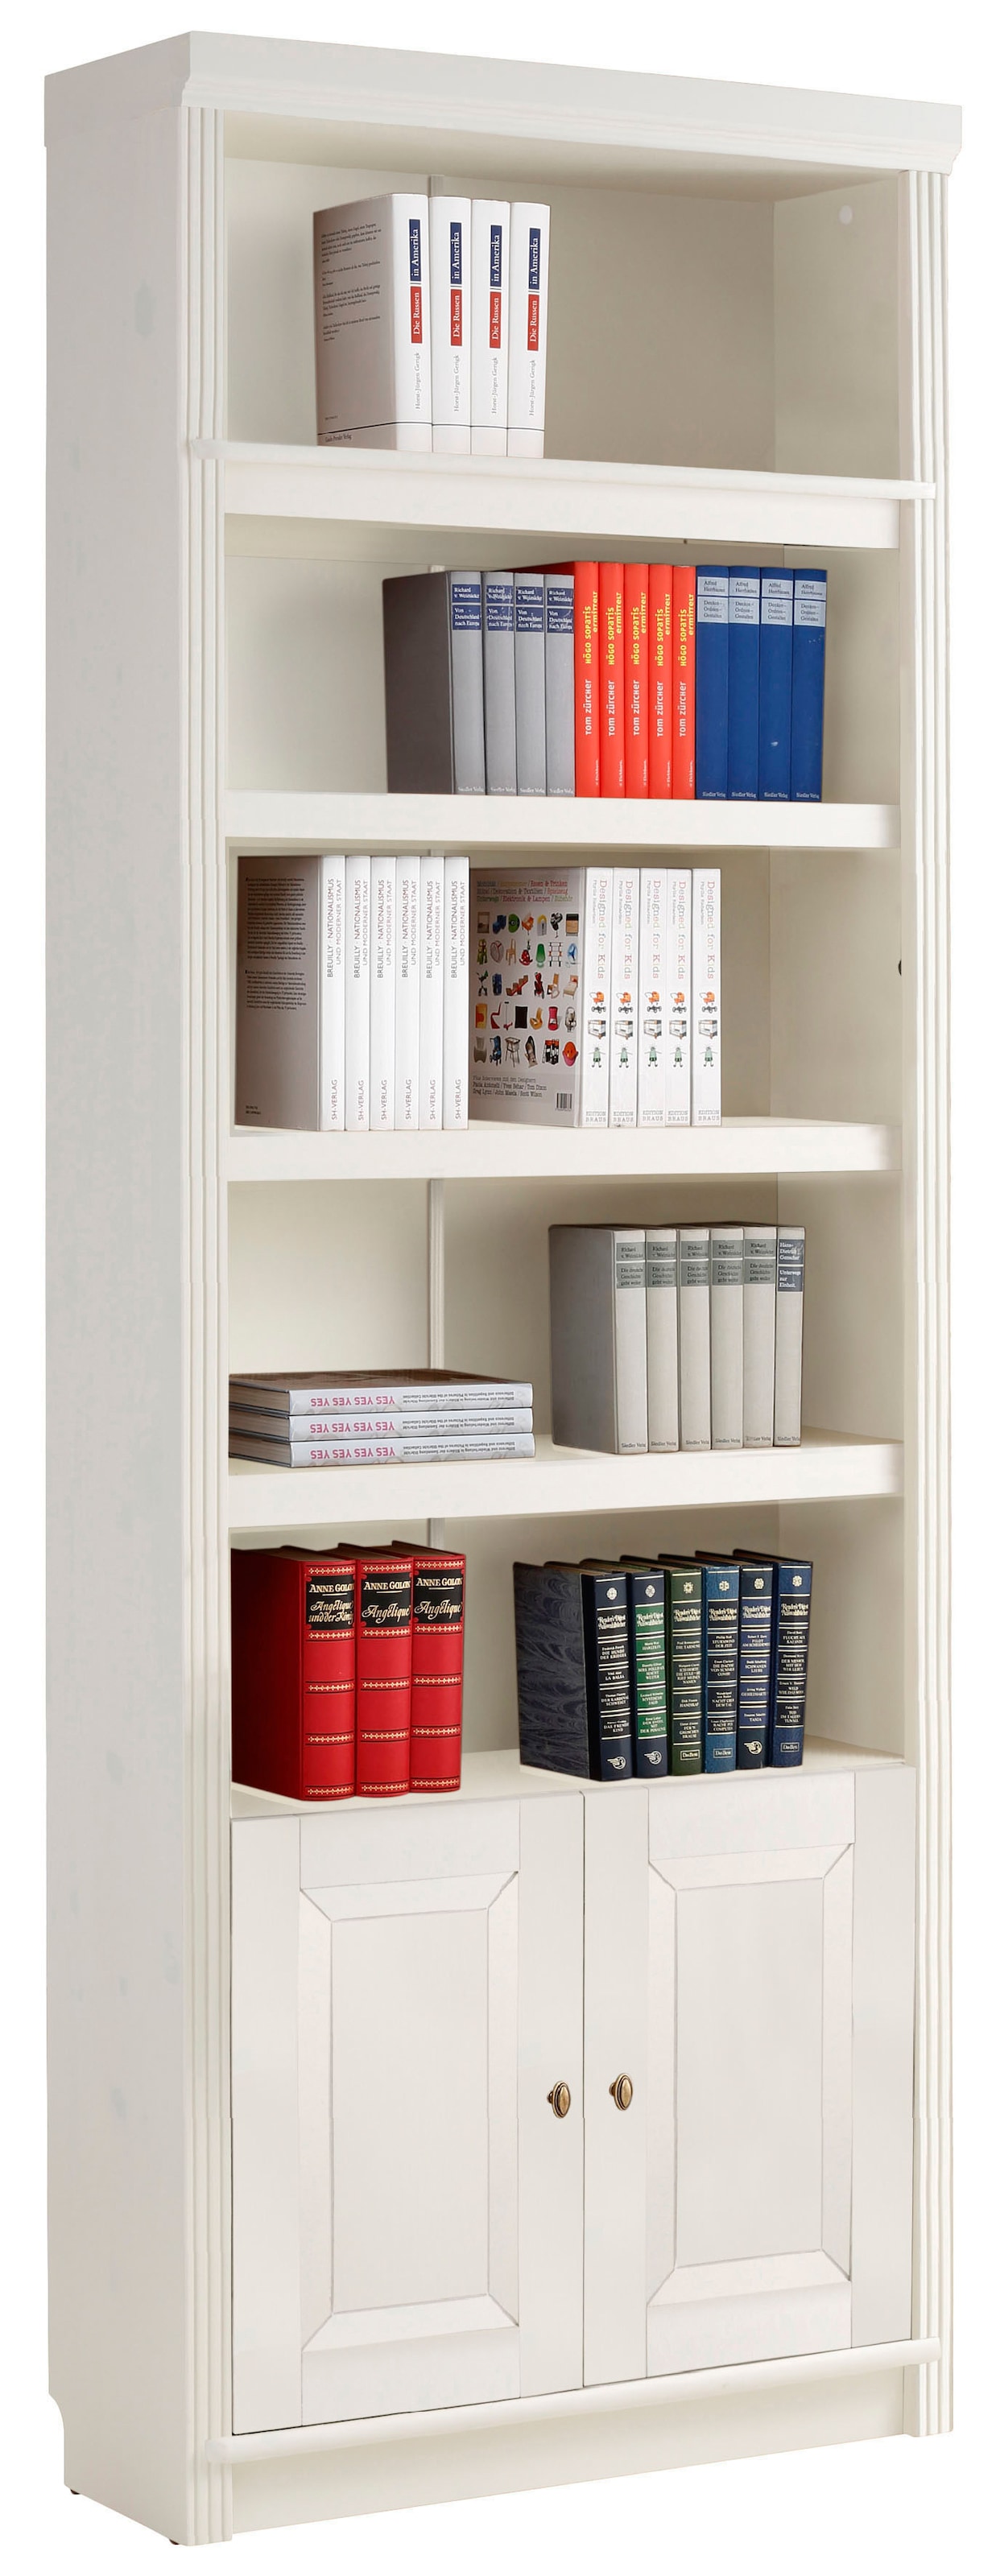 Bücherregal: Tipps zur Auswahl | Ackermann